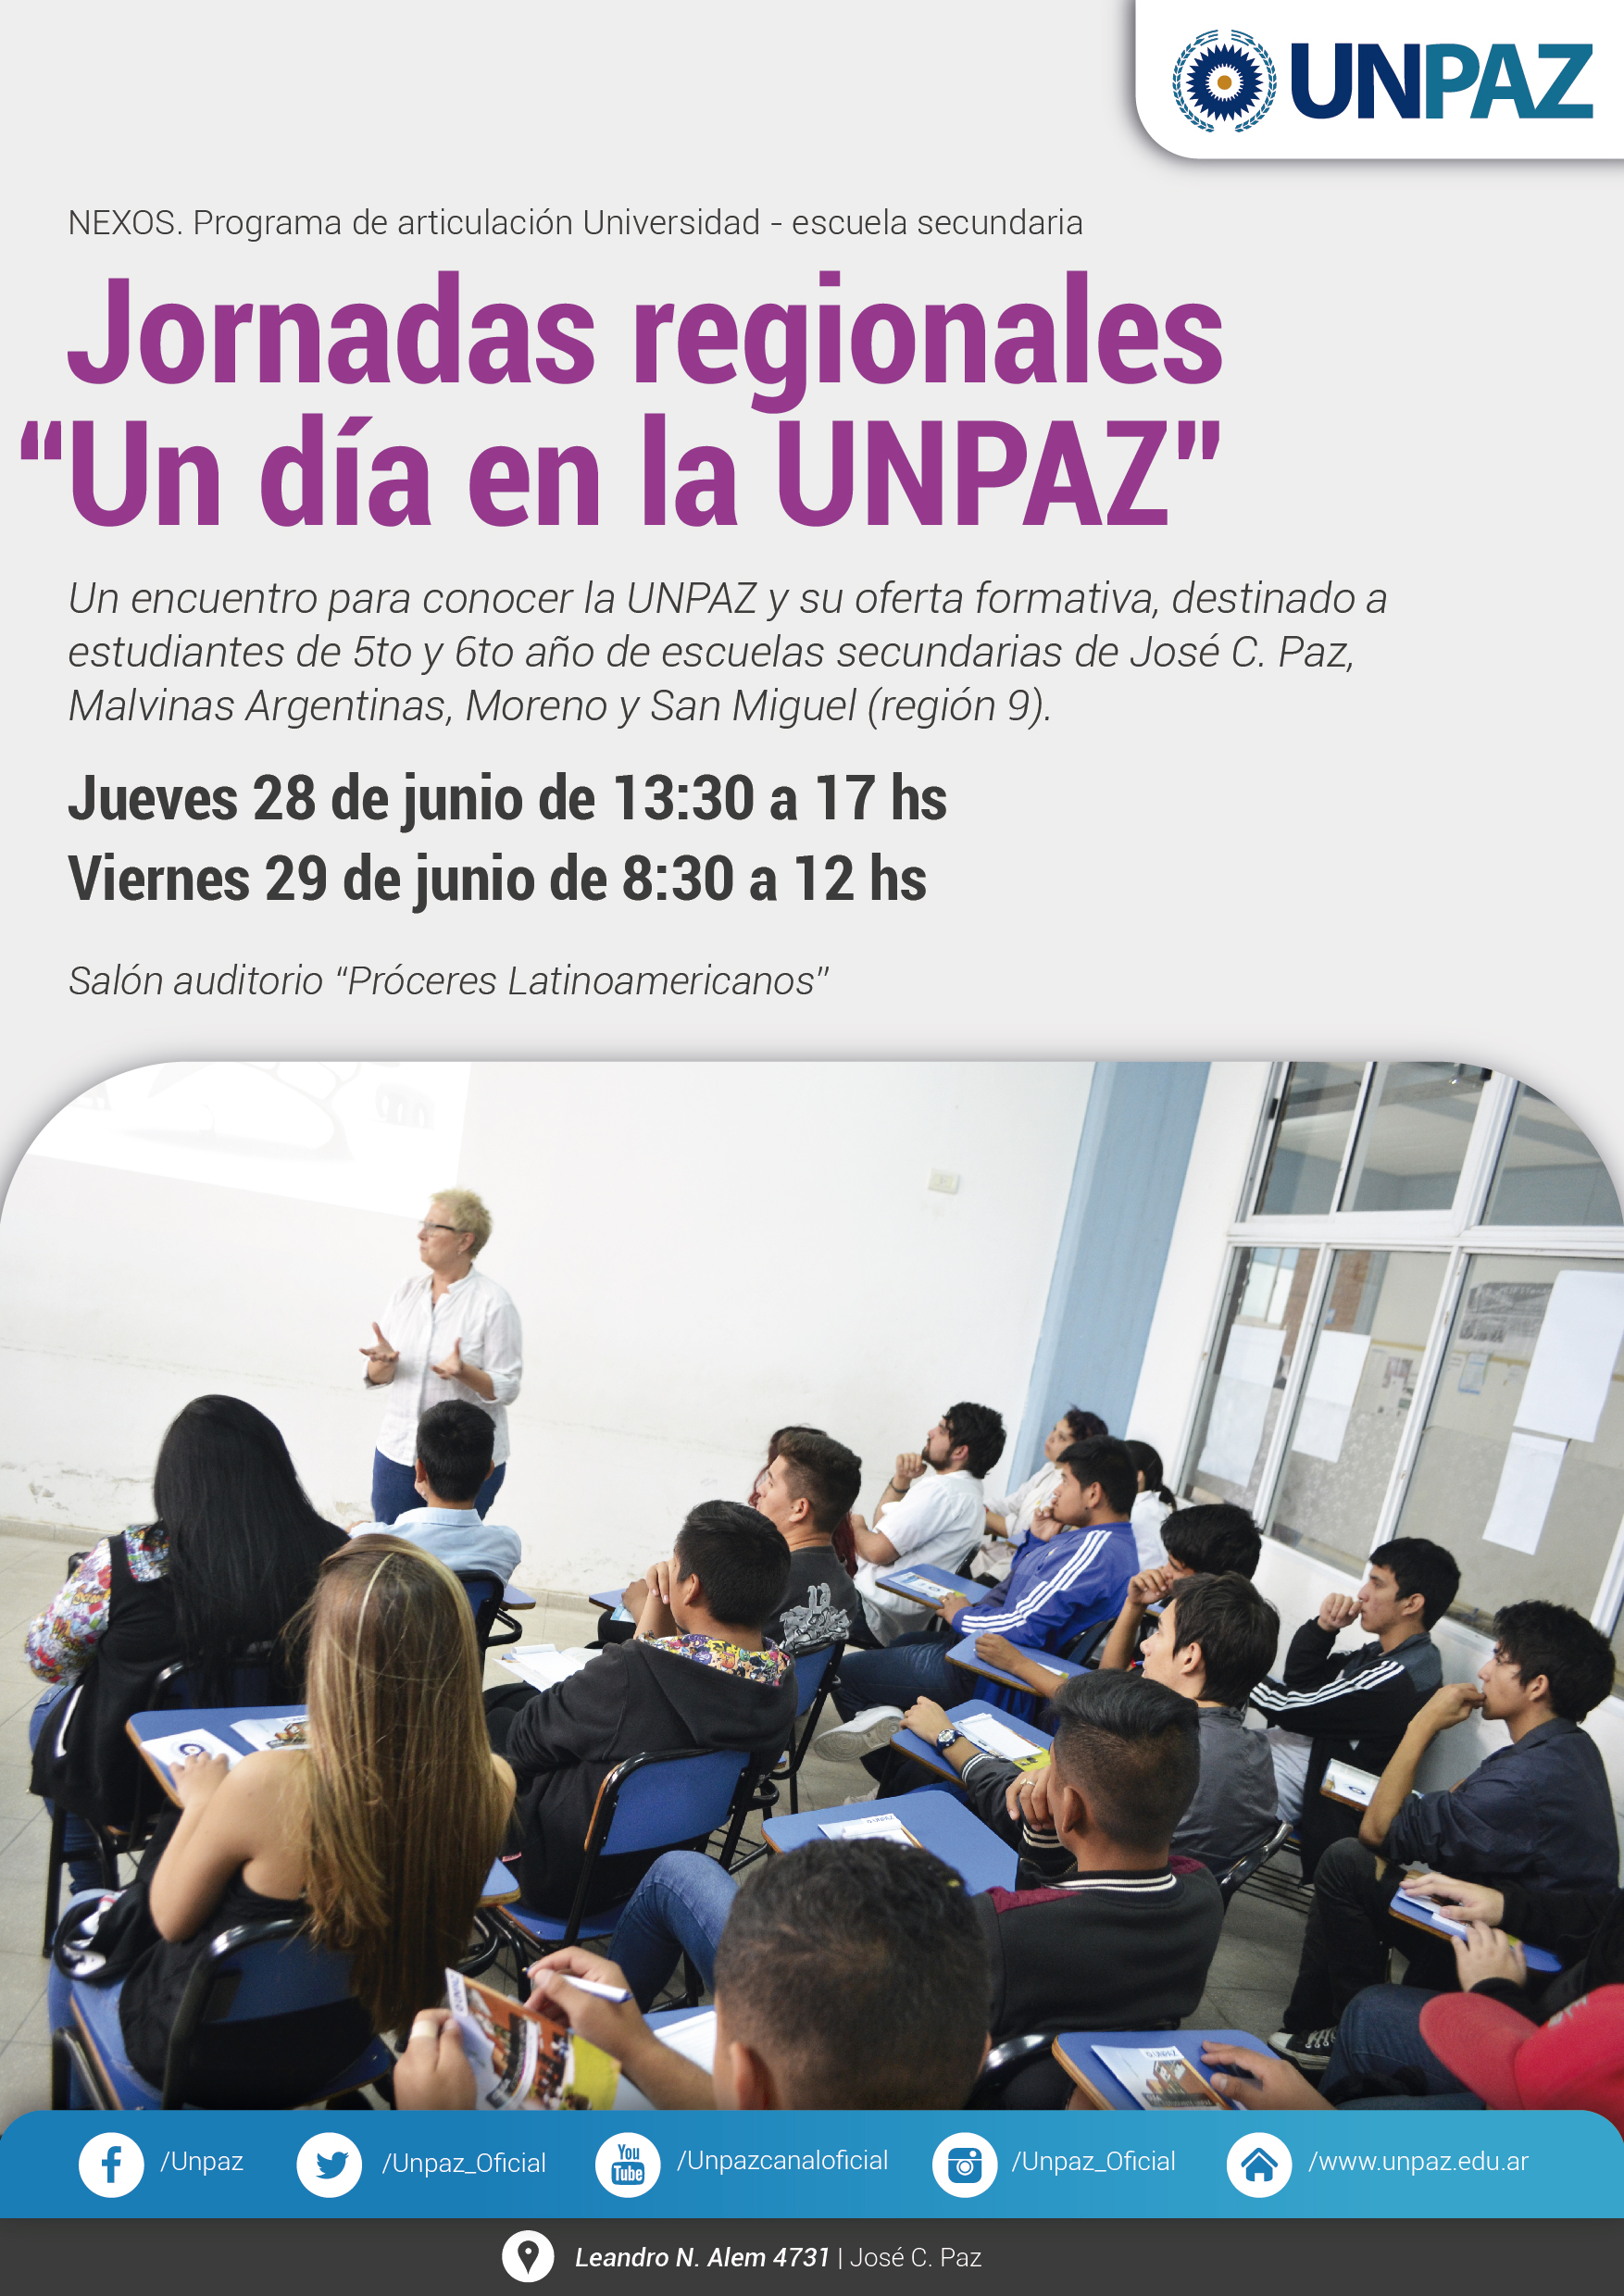 Jornadas regionales “Un día en la UNPAZ” con Estudiantes de 5° y 6° año de Educación Secundaria